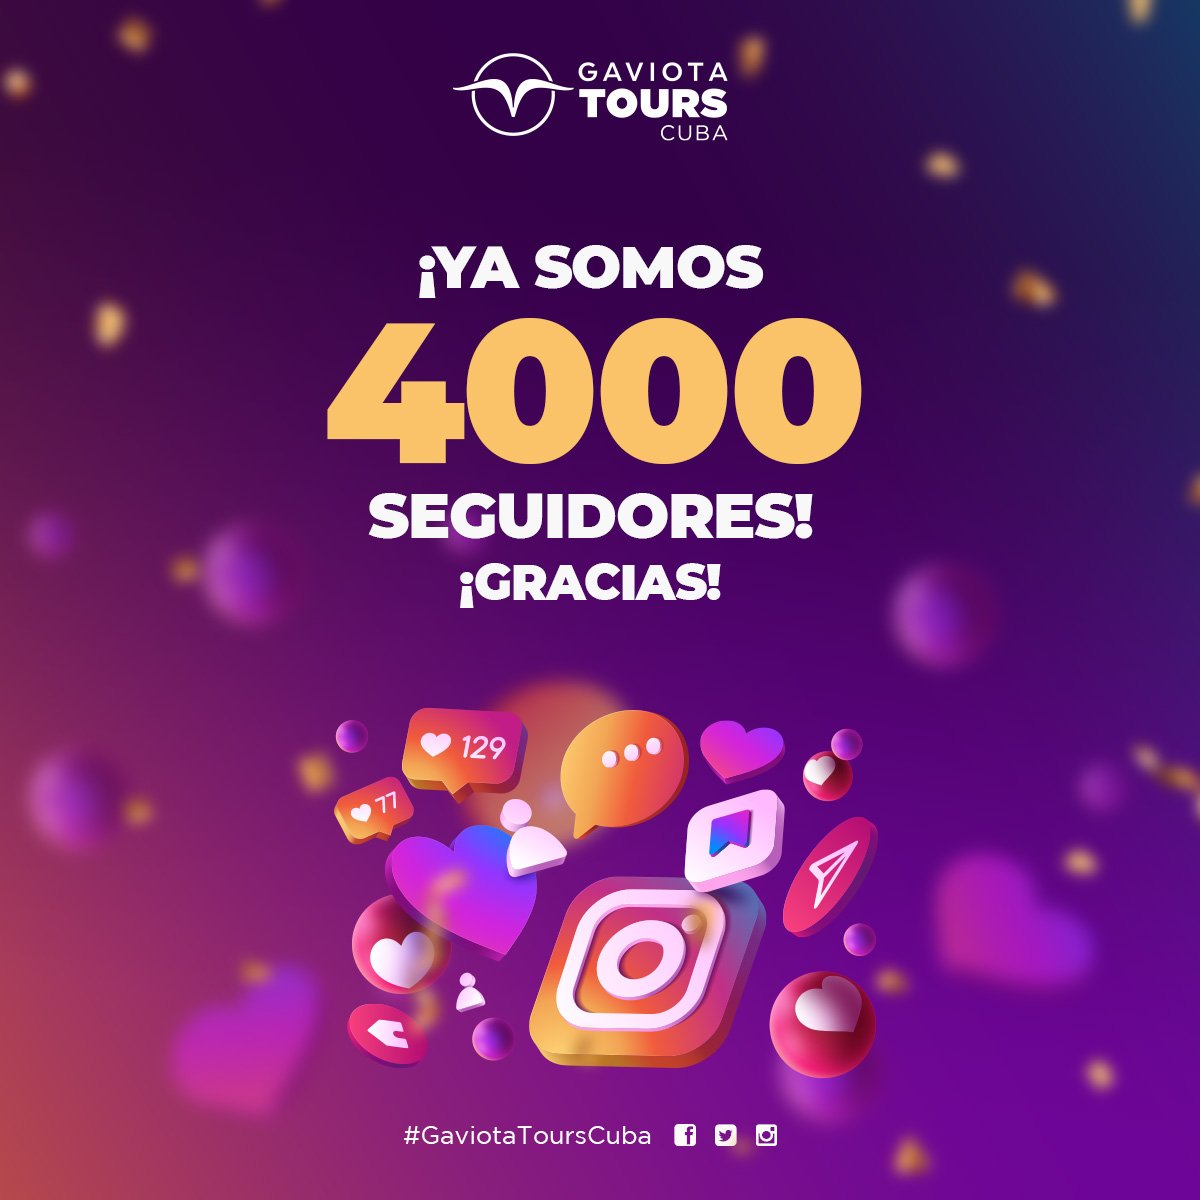 ¡Noticias emocionantes! Queremos agradecer a todos nuestros seguidores por su apoyo y dedicación, ¡porque hemos alcanzado la increíble cifra de 4000 seguidores en Instagram! 🎉🎉🎉
#cubaunica #gaviotaturismo #GaviotaToursCuba